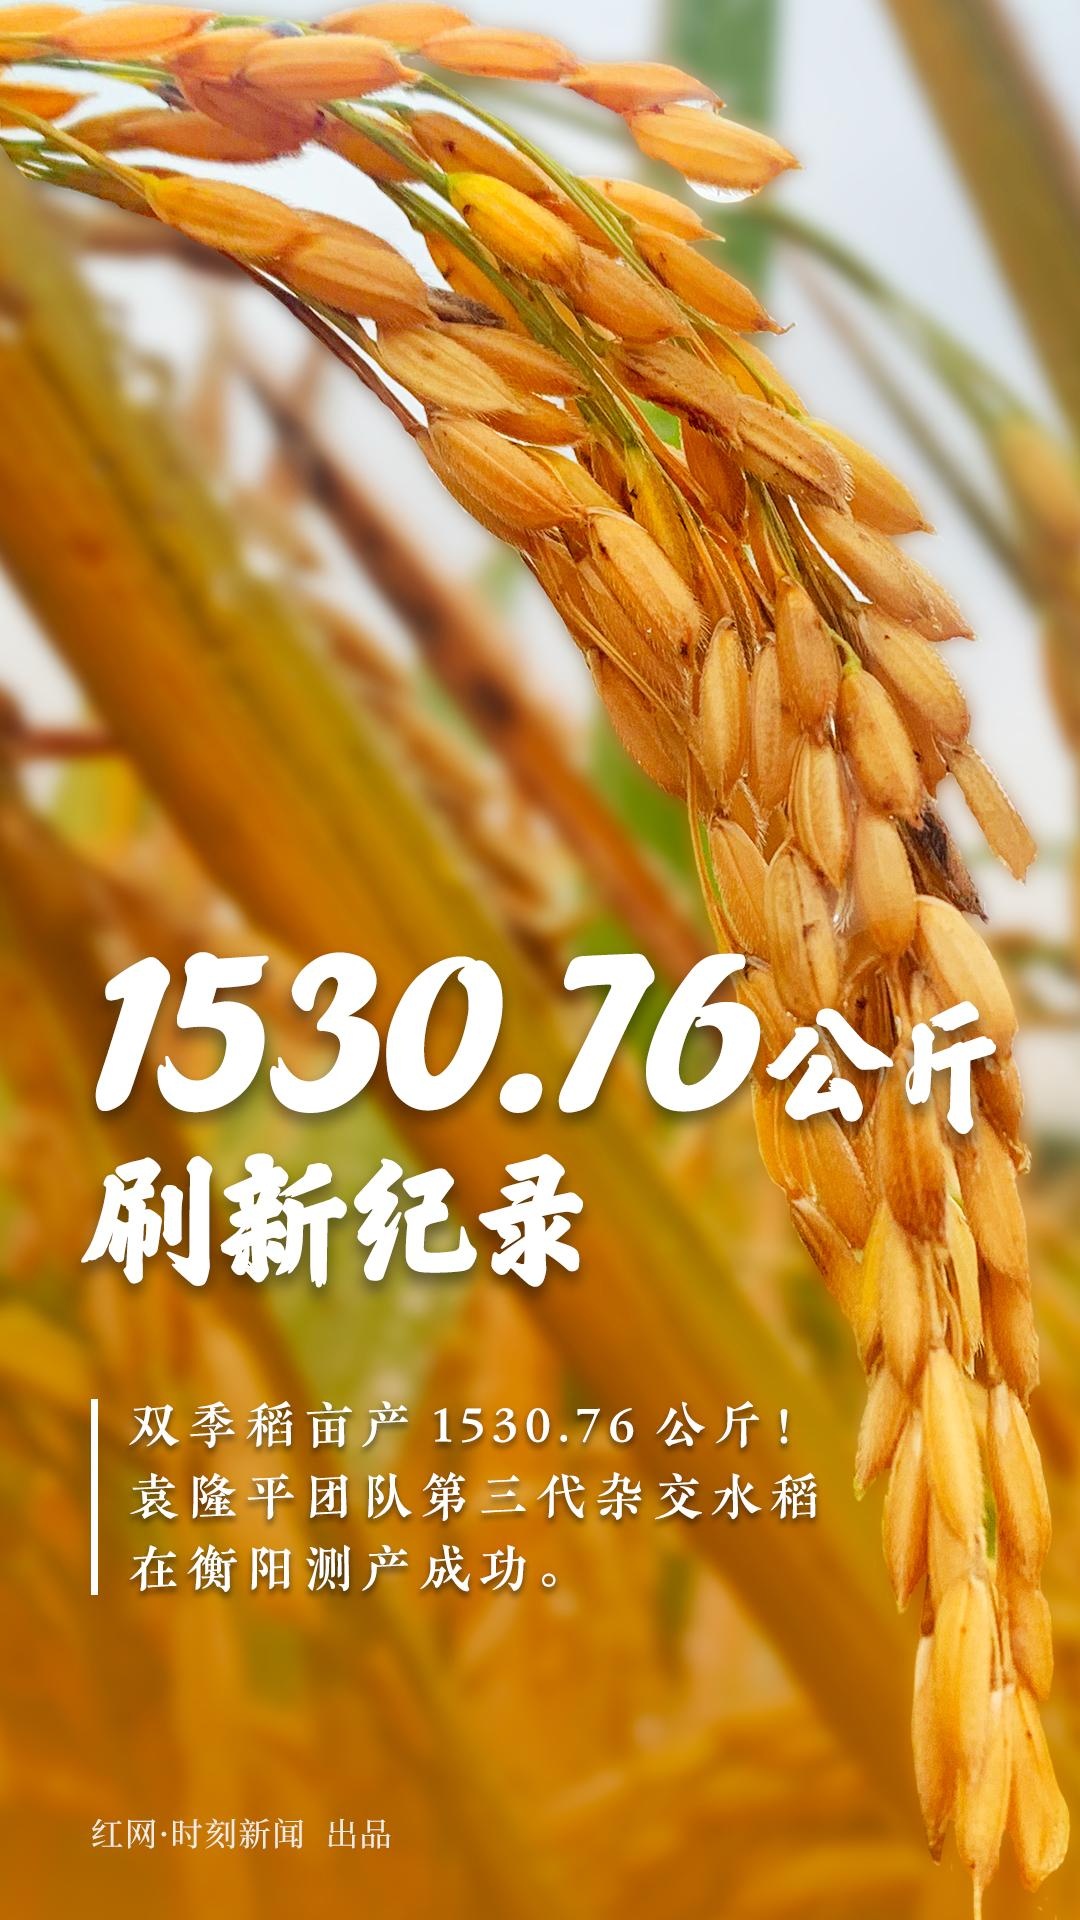 亩产1530.76公斤！袁隆平的杂交稻再次刷新纪录